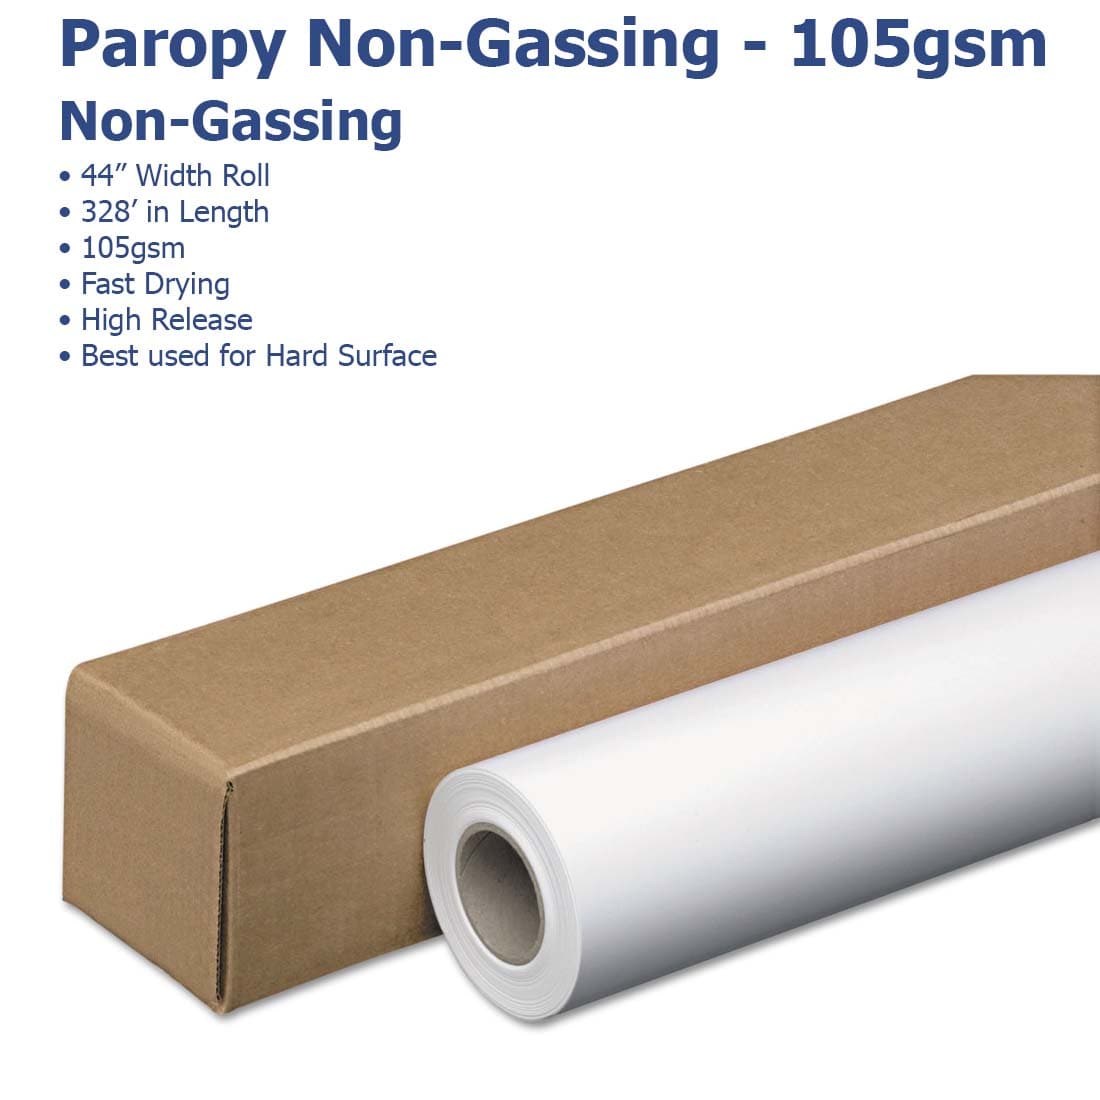 Paropy™ Sublimation Paper - 105gsm Non Gassing - Joto Imaging Supplies US